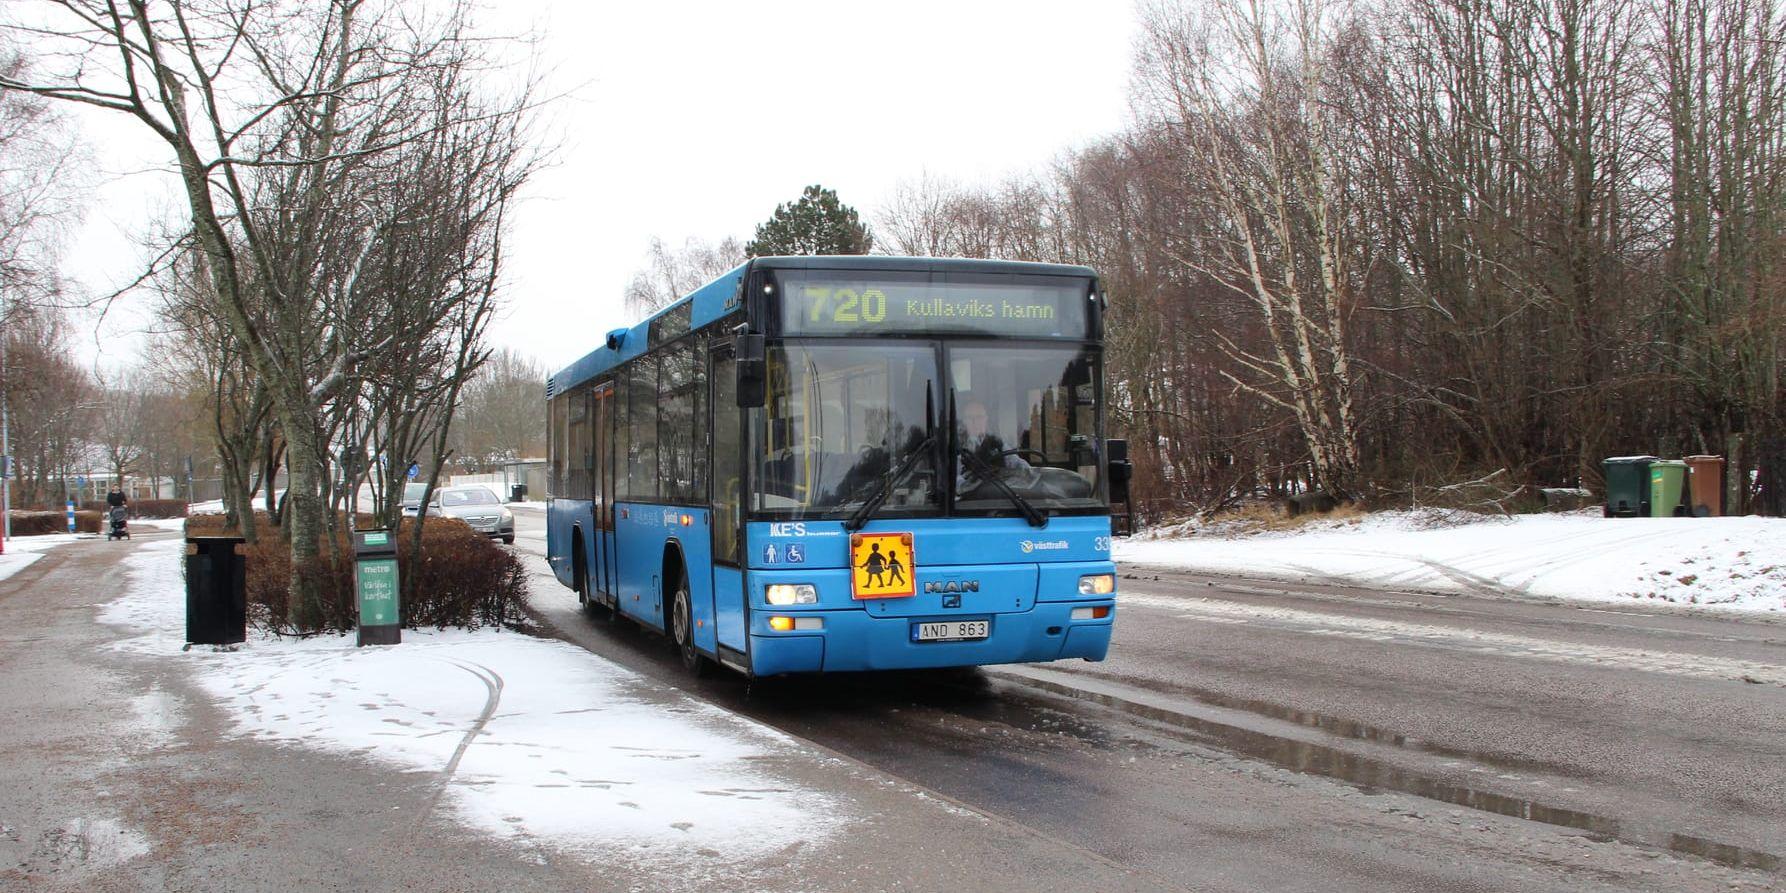 Problemen på linje 720 i Kullavik och Särö har återigen blossat upp. Nu satsar kommunledningen på fler åtgärder. Bild: Lisa Henricson